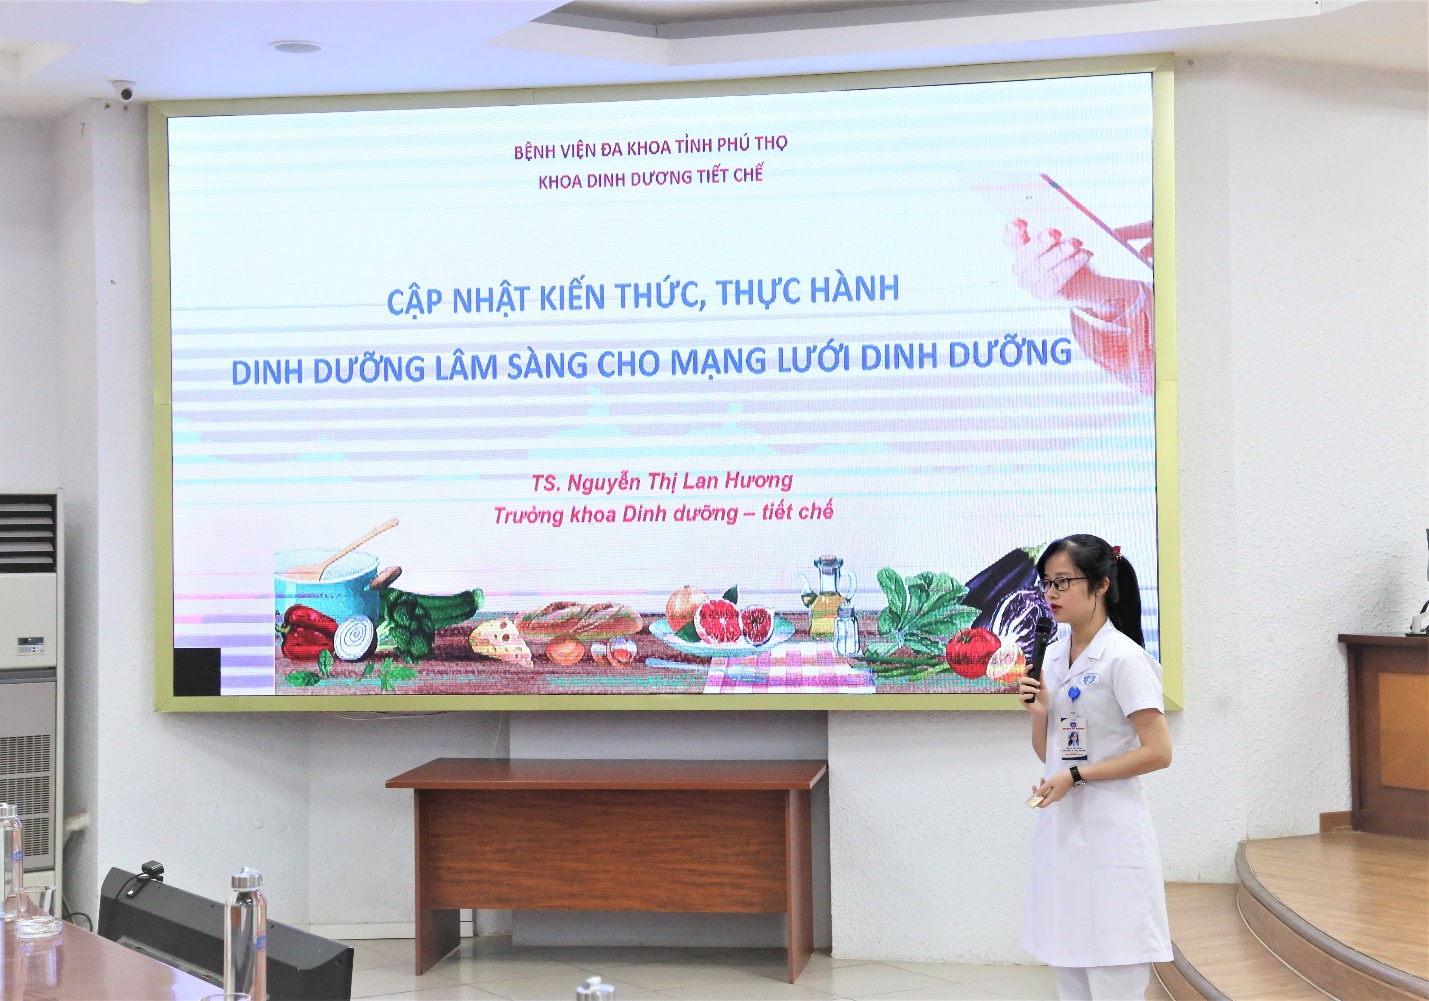 Tiến sĩ dinh dưỡng Nguyễn Thị Lan Hương - Trưởng khoa Dinh dưỡng tiết chế chia sẻ trong chương trình 